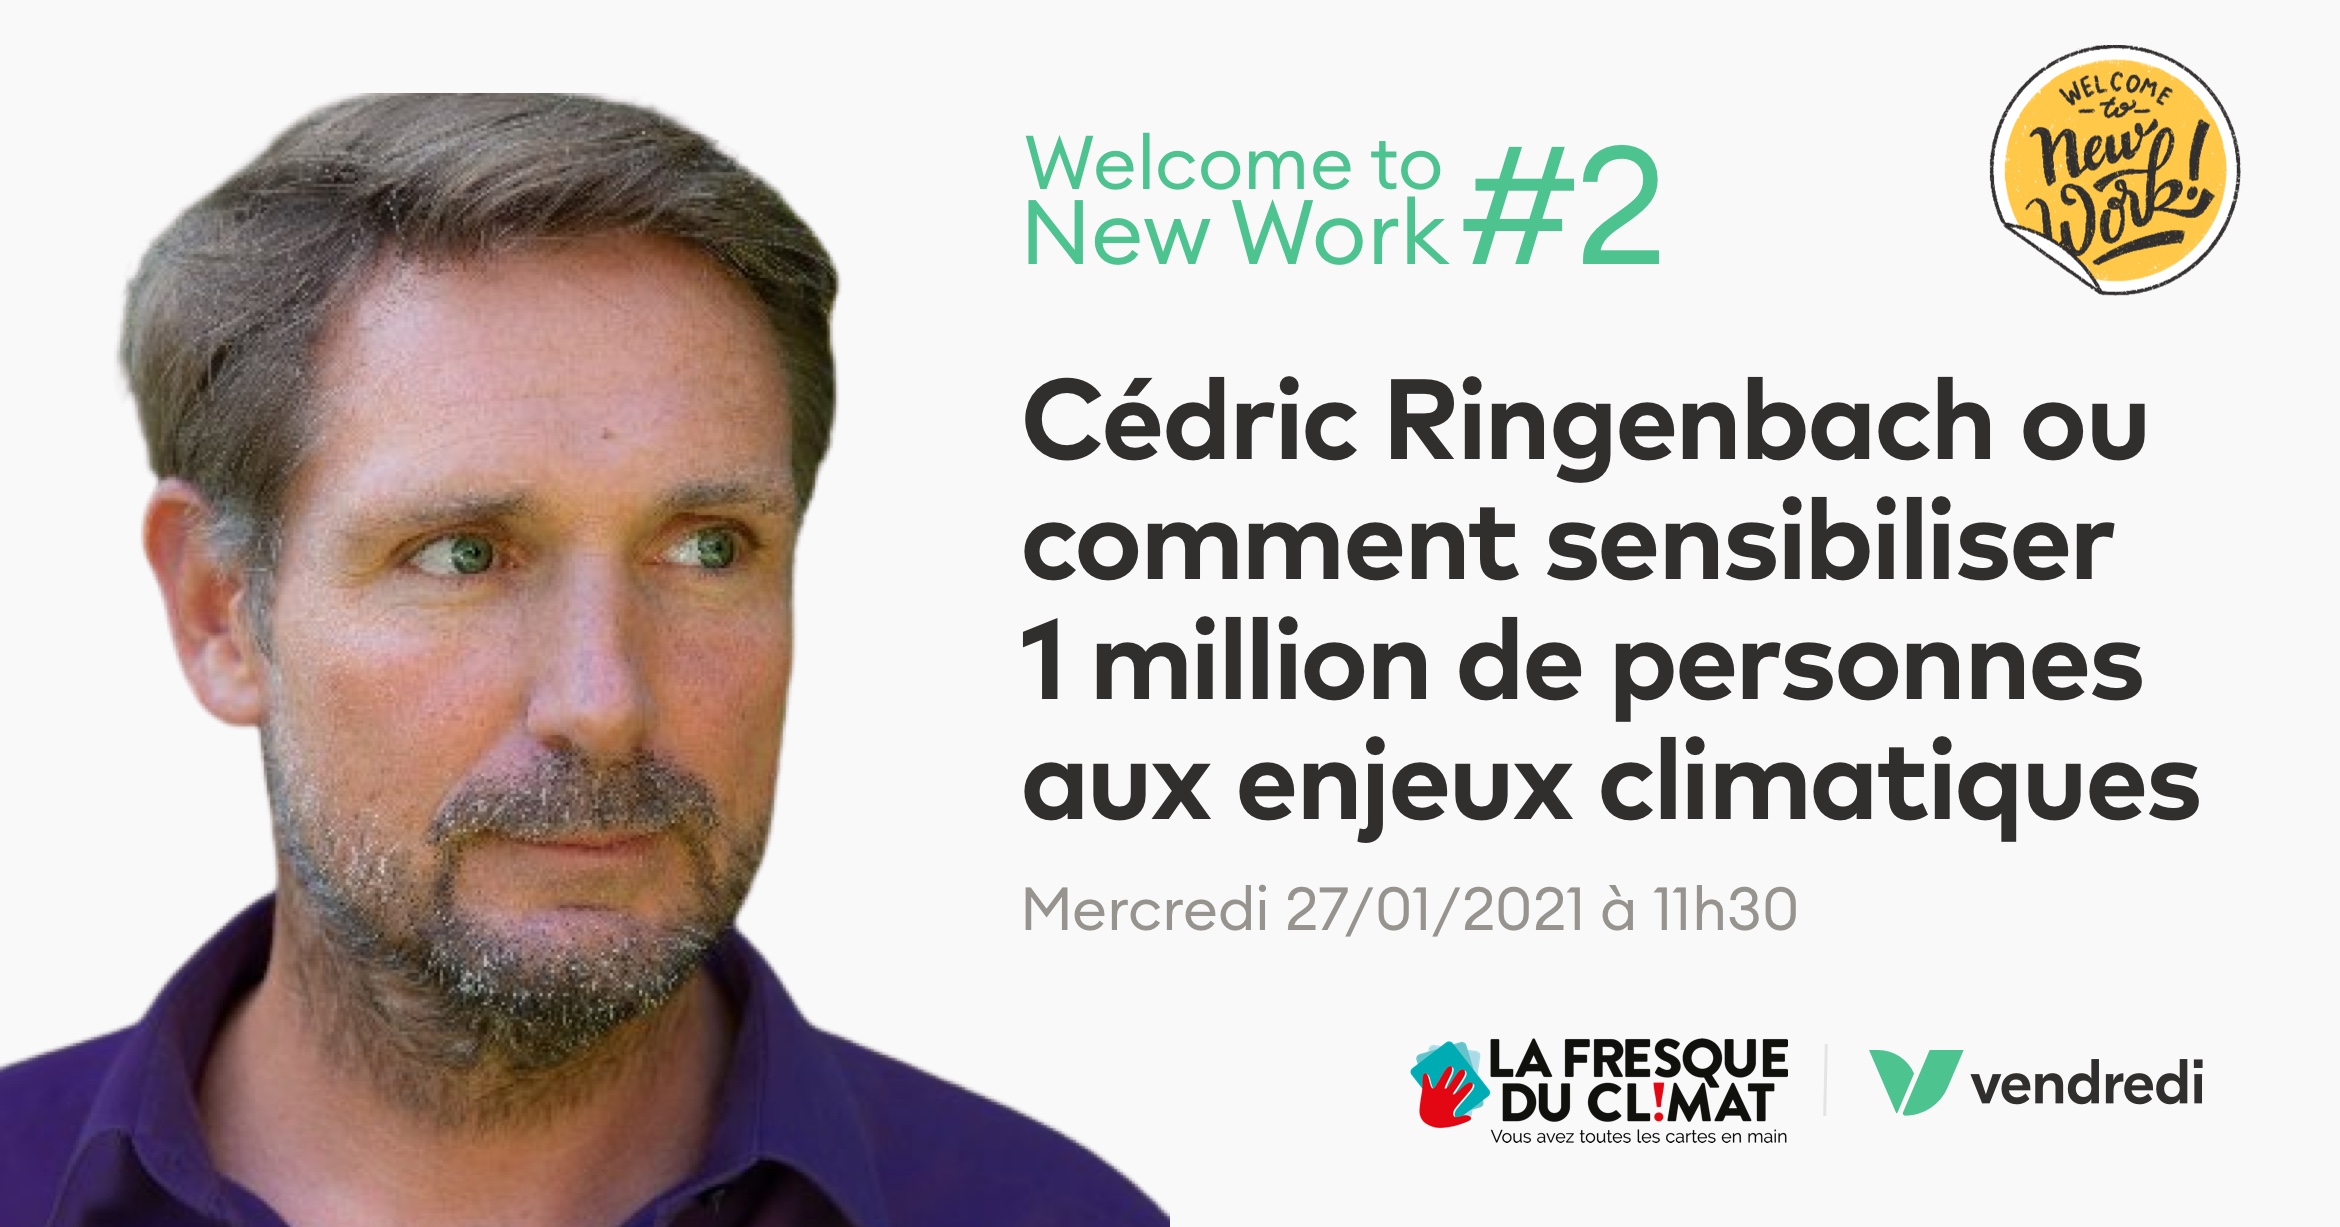 Cédric Ringenbach ou comment sensibiliser 1 million de personnes aux enjeux climatiques